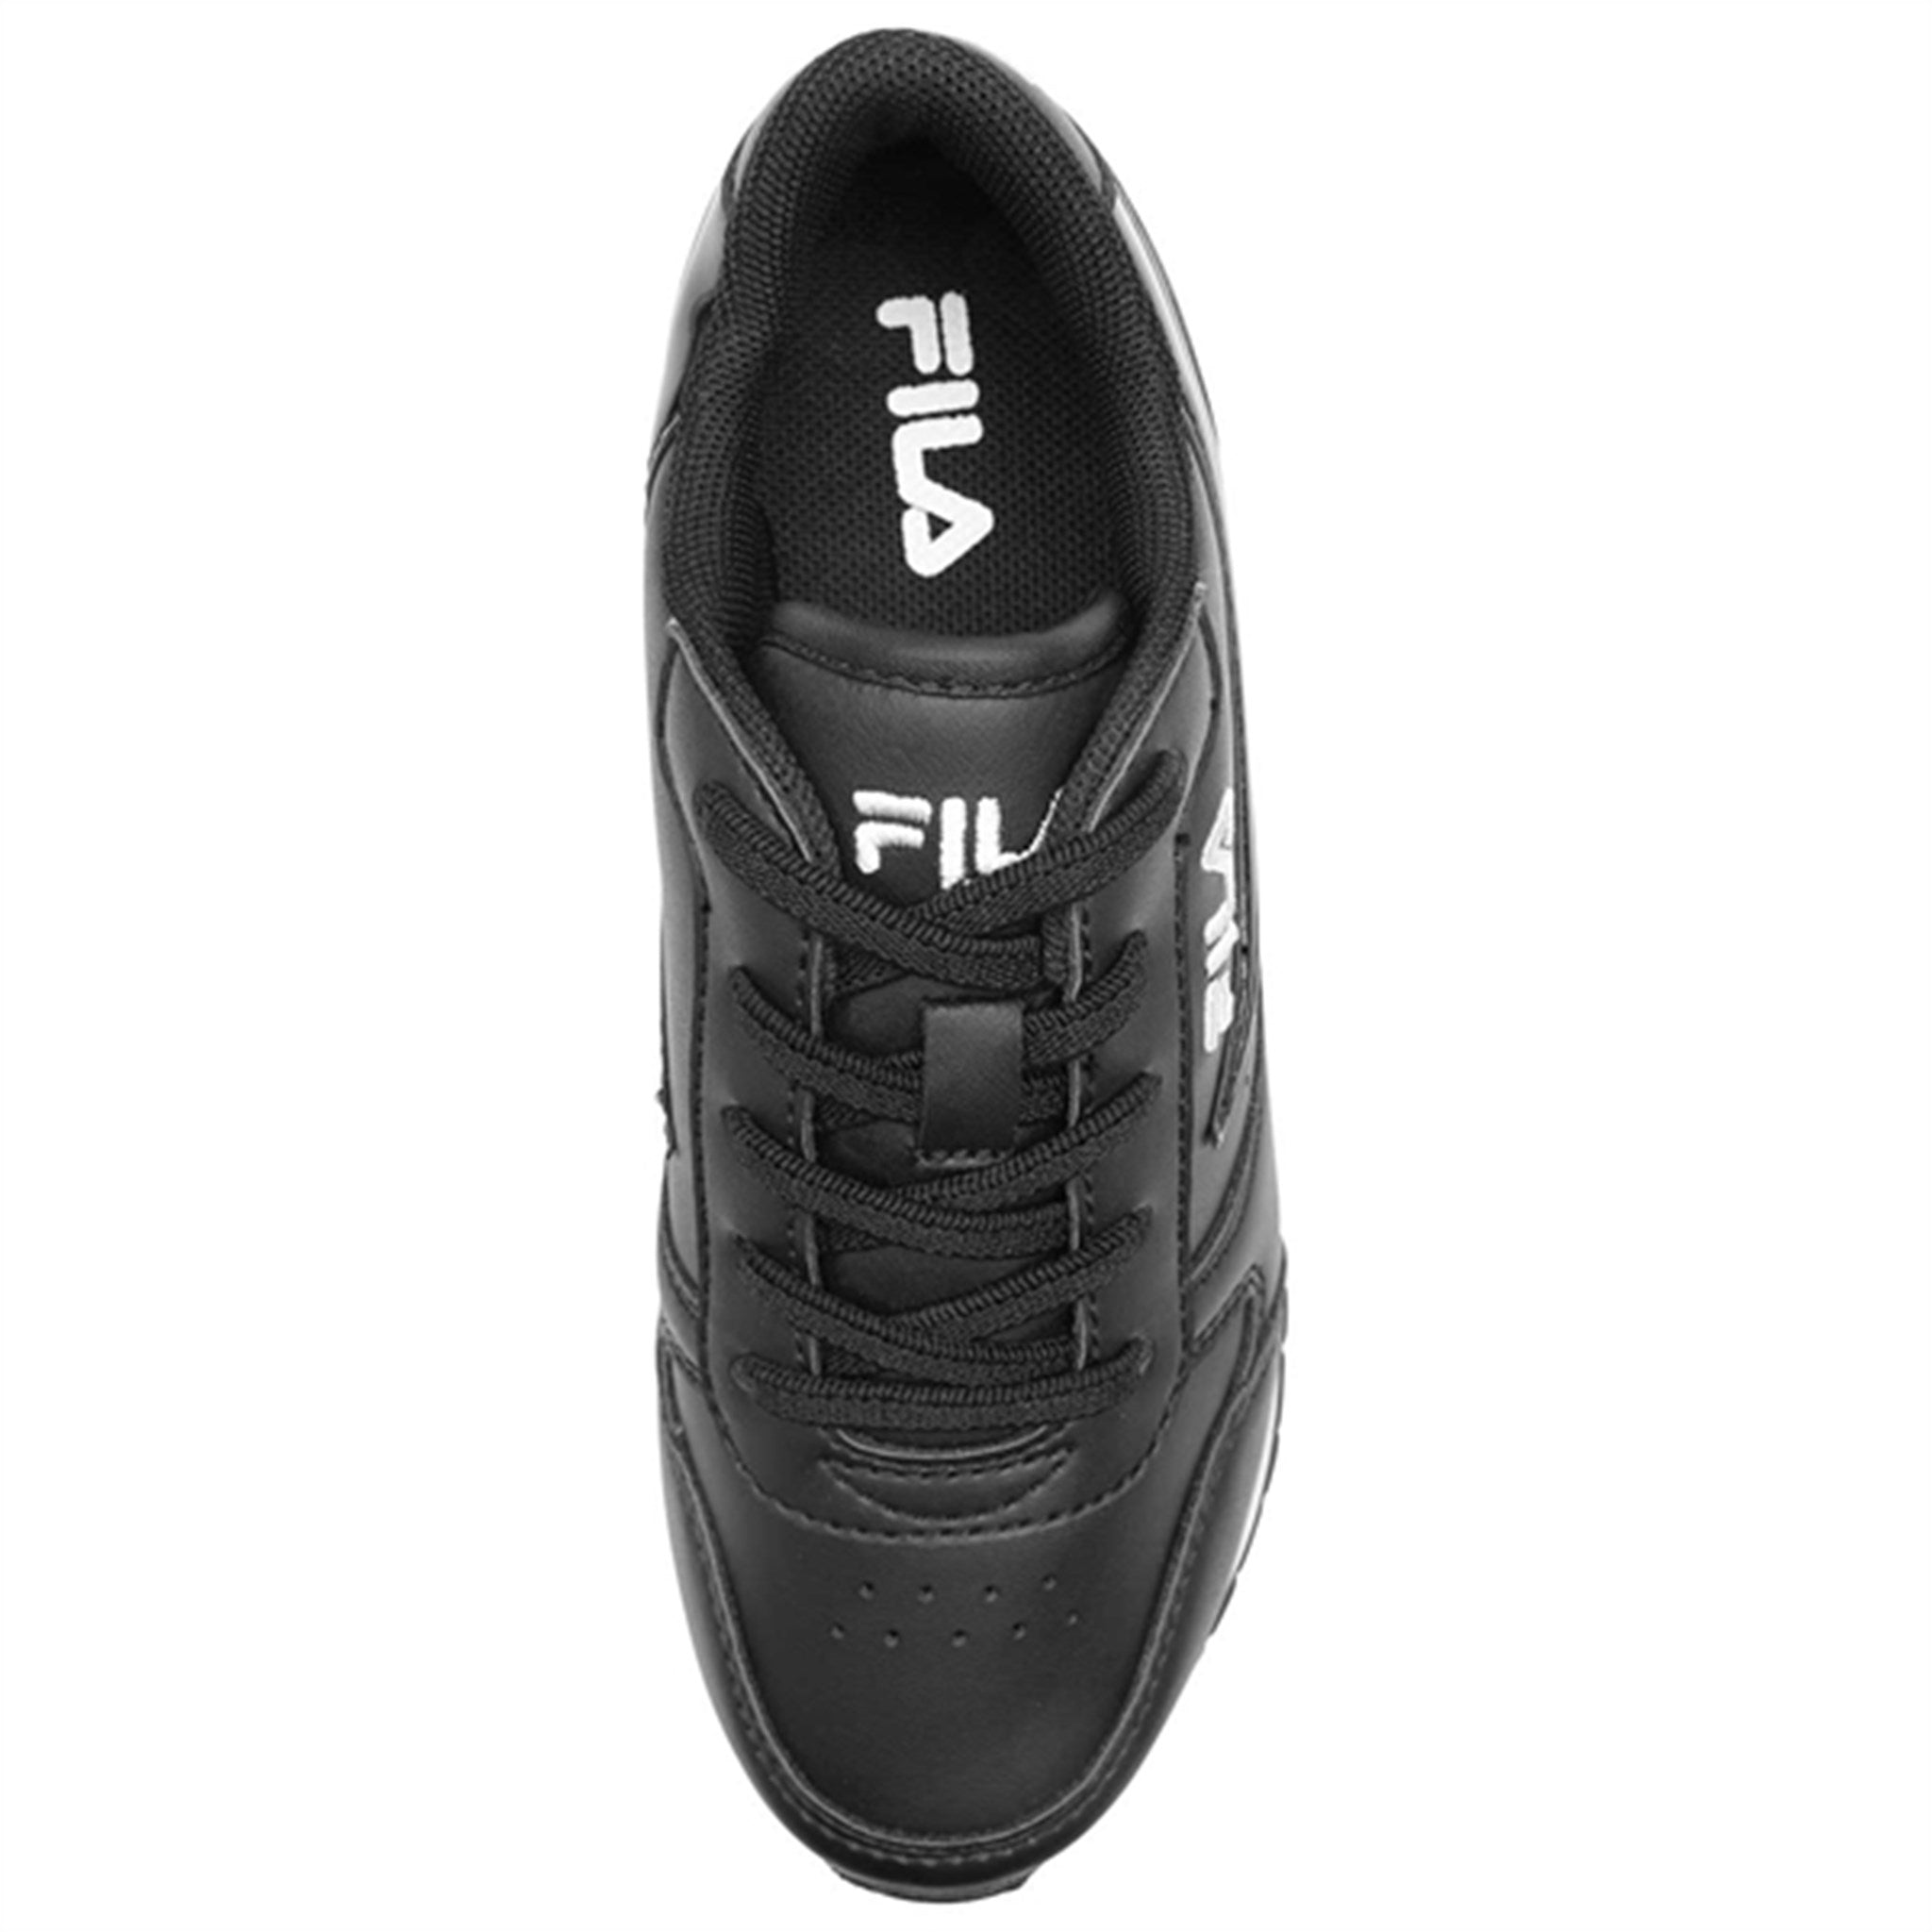 Fila Orbit F Low Sneakers Black 4